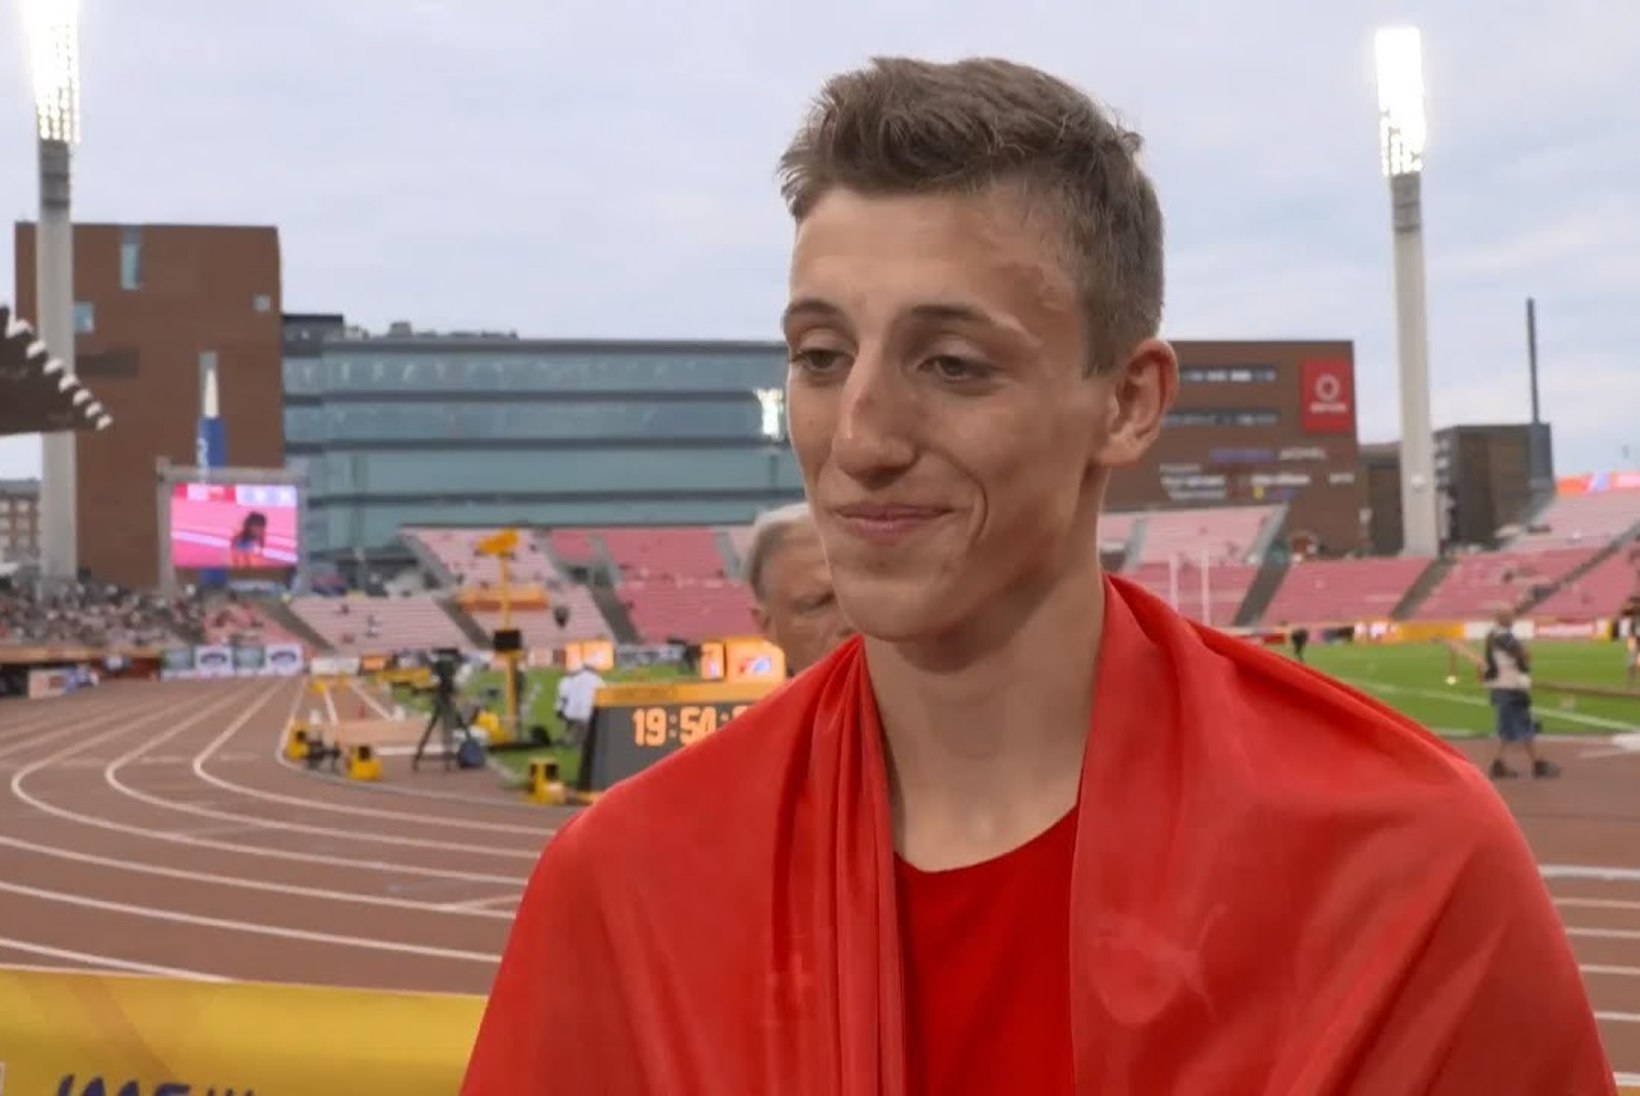 20aastane Šveitsi kümnevõistleja tegi kaugushüppes supertulemuse